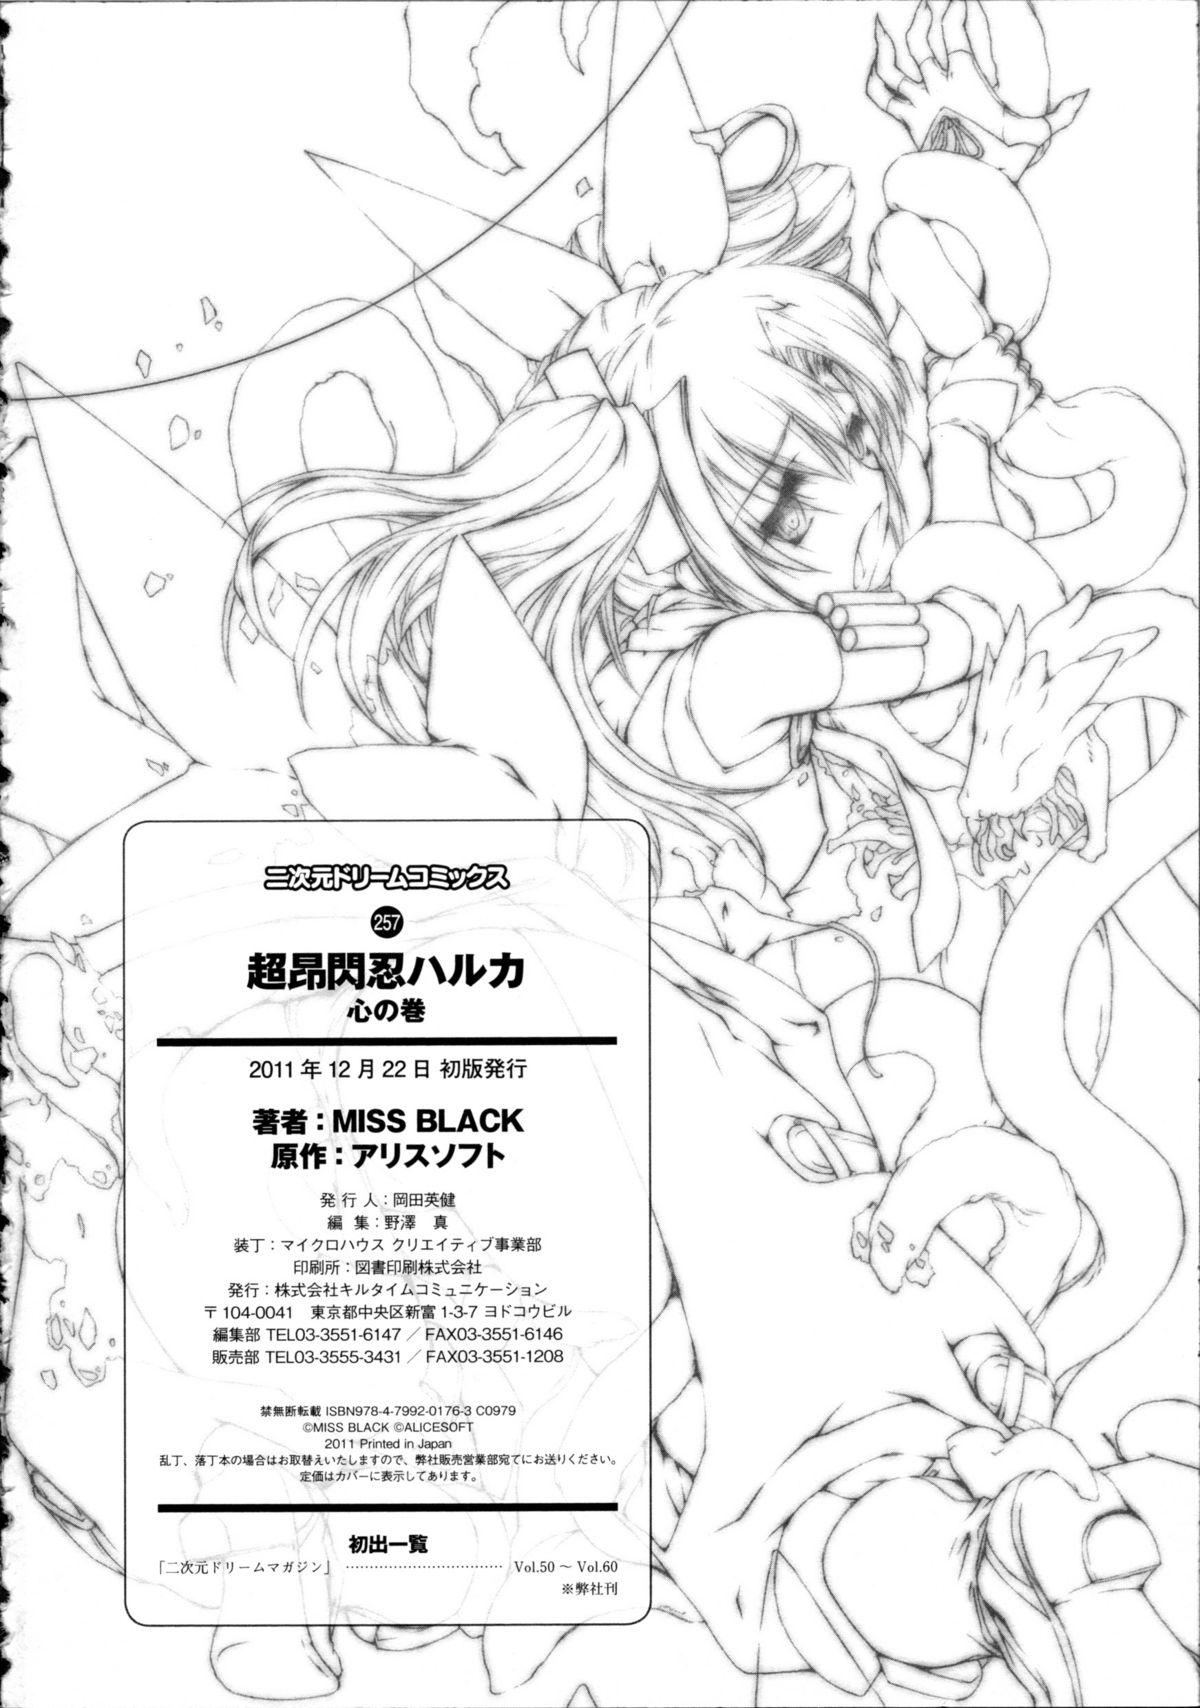 Camgirl Choukou Sennin Haruka Kokoro no Maki - Beat blades haruka Hot Naked Girl - Page 243